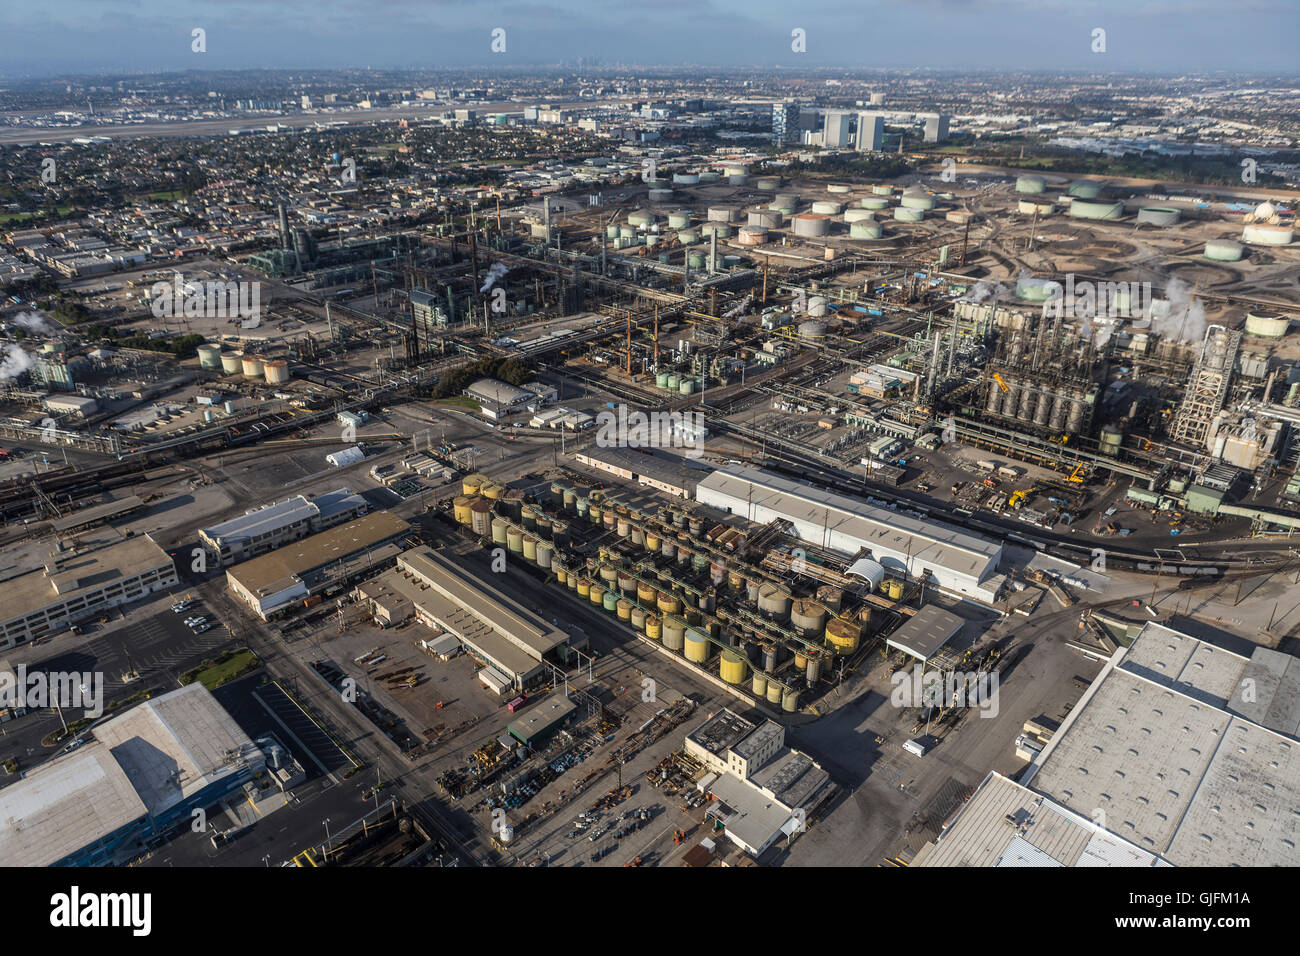 El Segundo, Californie, USA - 6 août 2016 : Vue aérienne de la grande raffinerie de pétrole près de Los Angeles en Californie du Sud. Banque D'Images